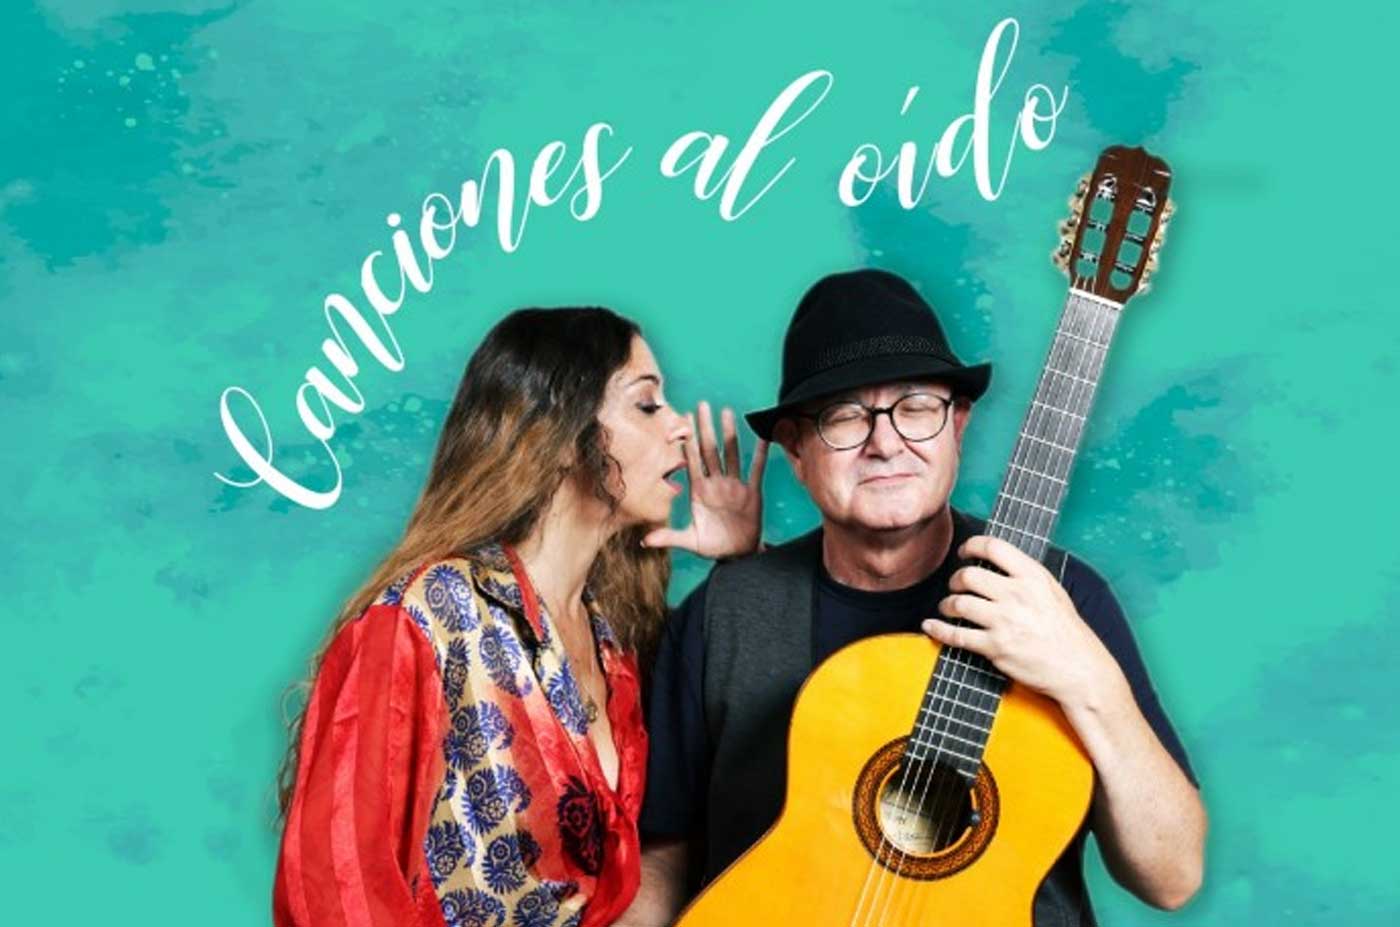 Sandra Carrasco Jose Luis Monton Canciones al oido flamenco concierto